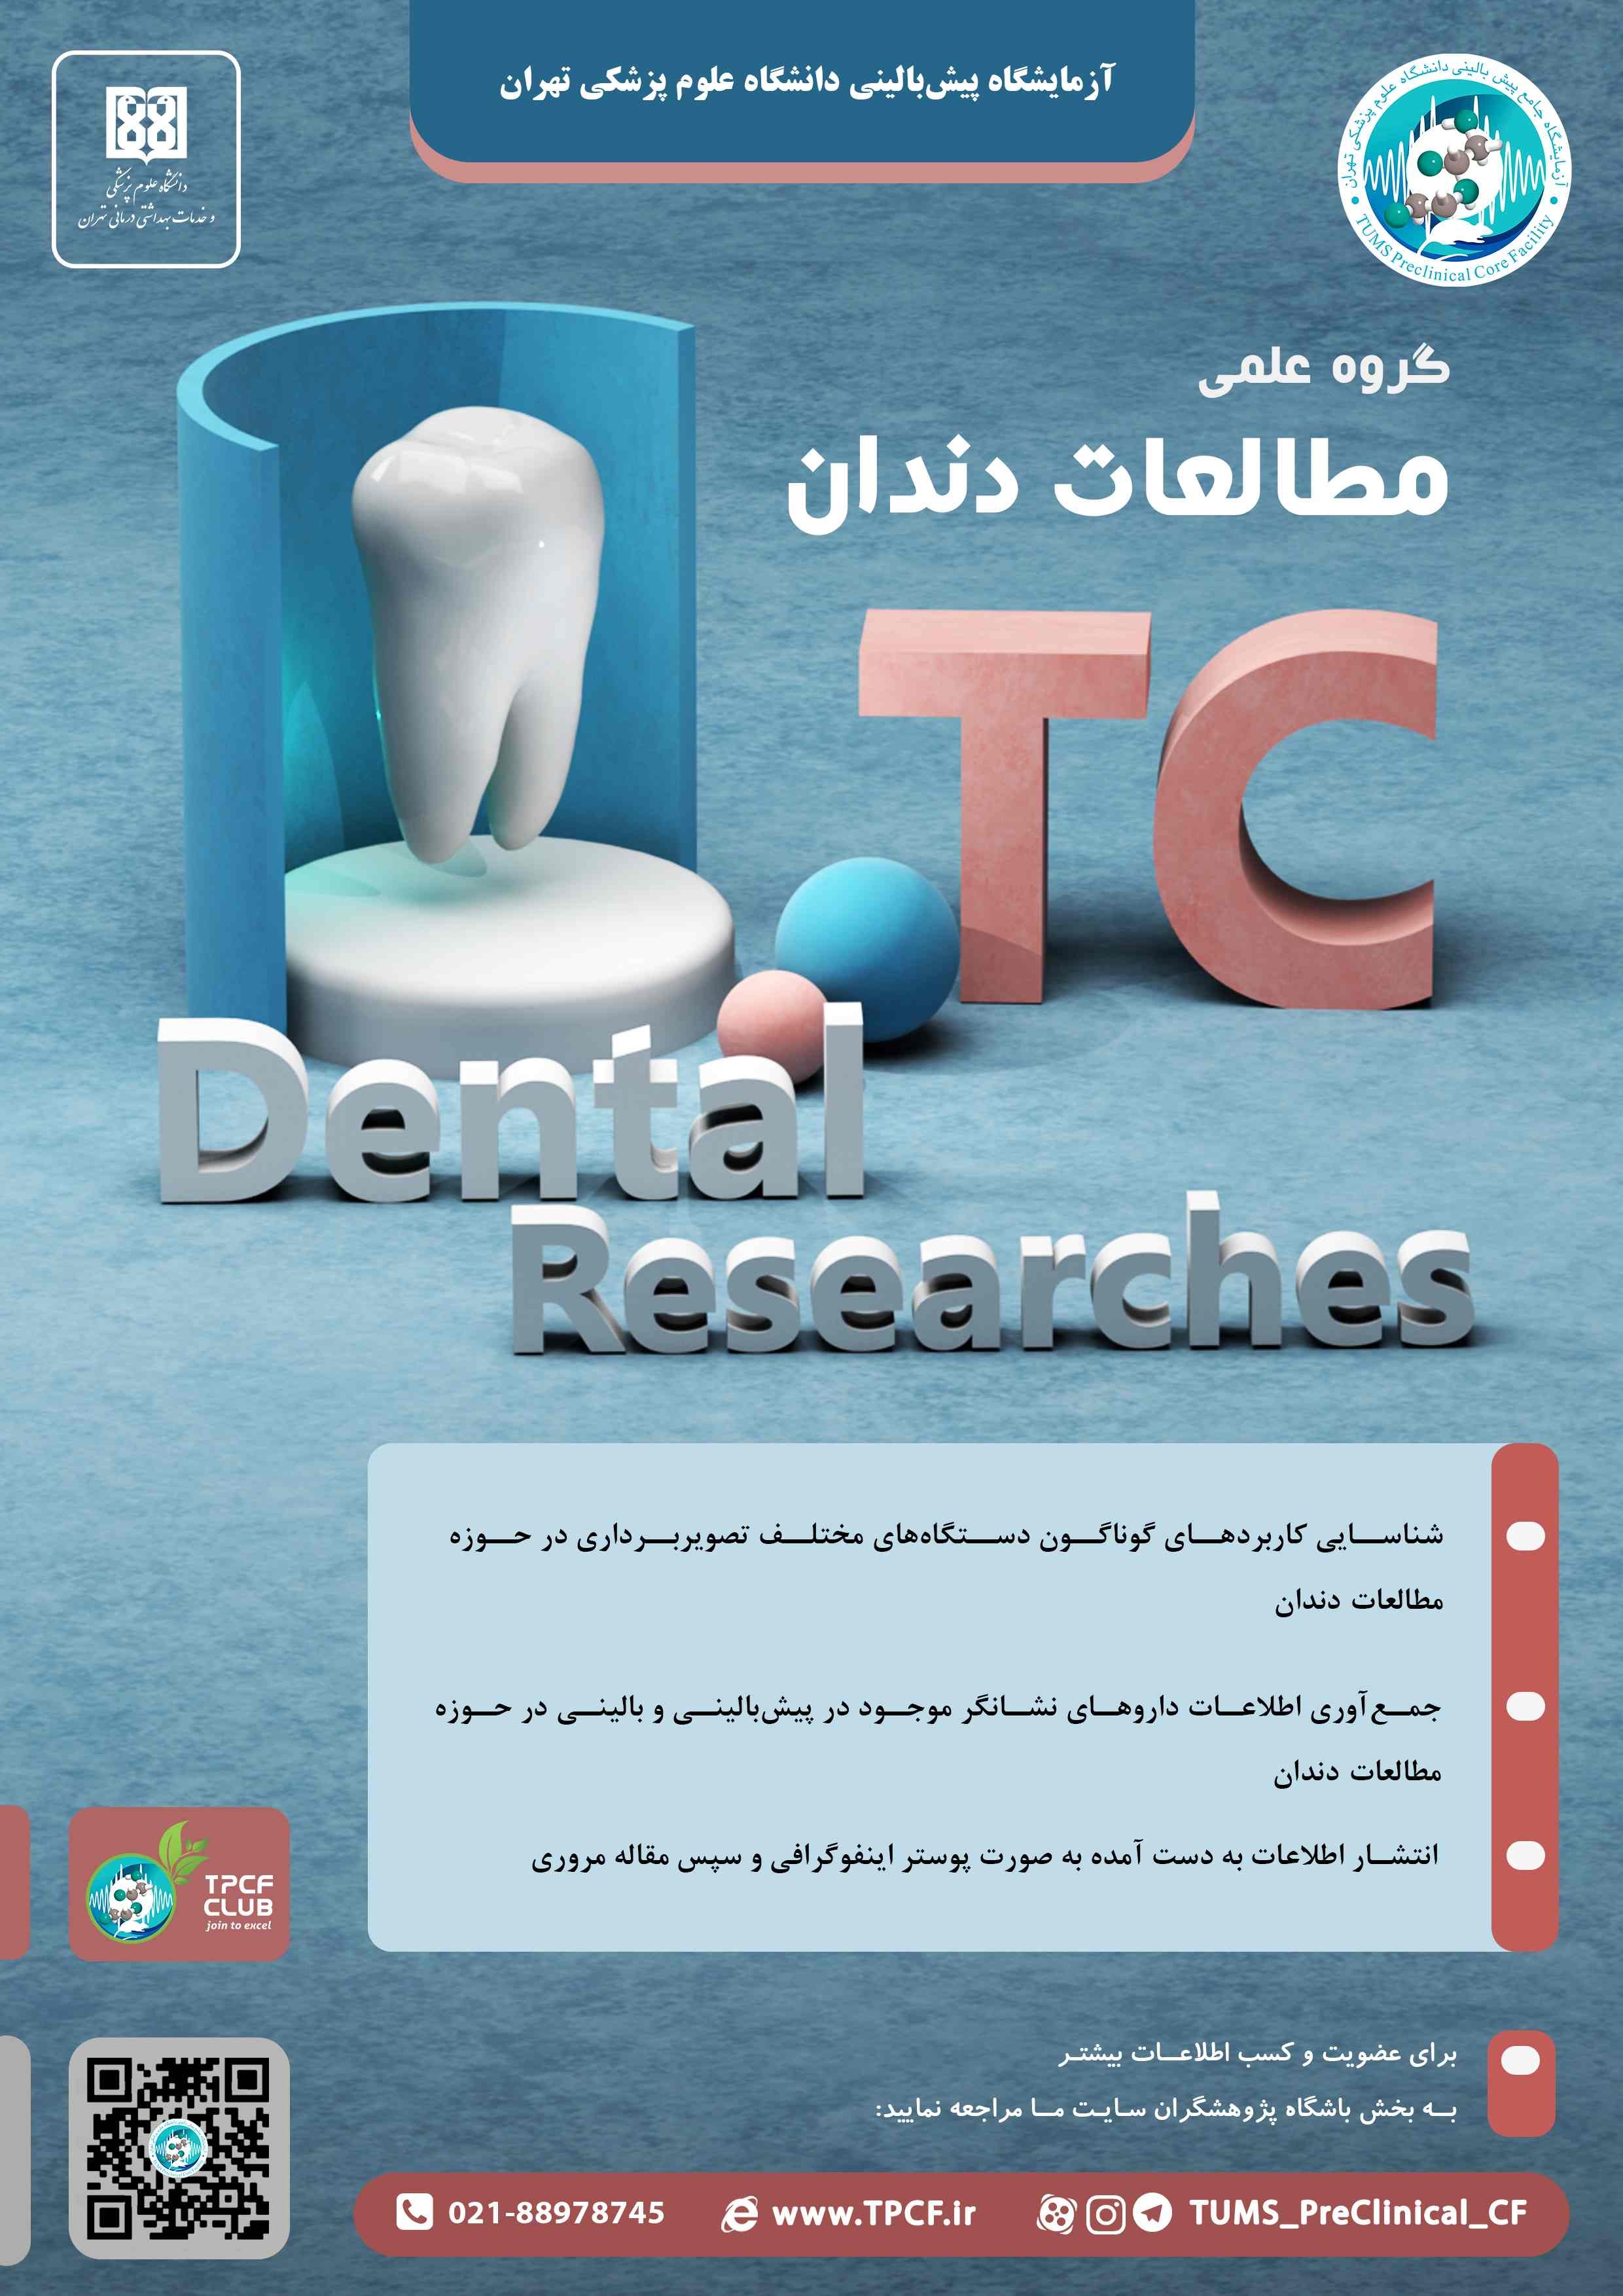 تیم علمی کاربرد تصویربرداری پیش بالینی در مطالعات دندان